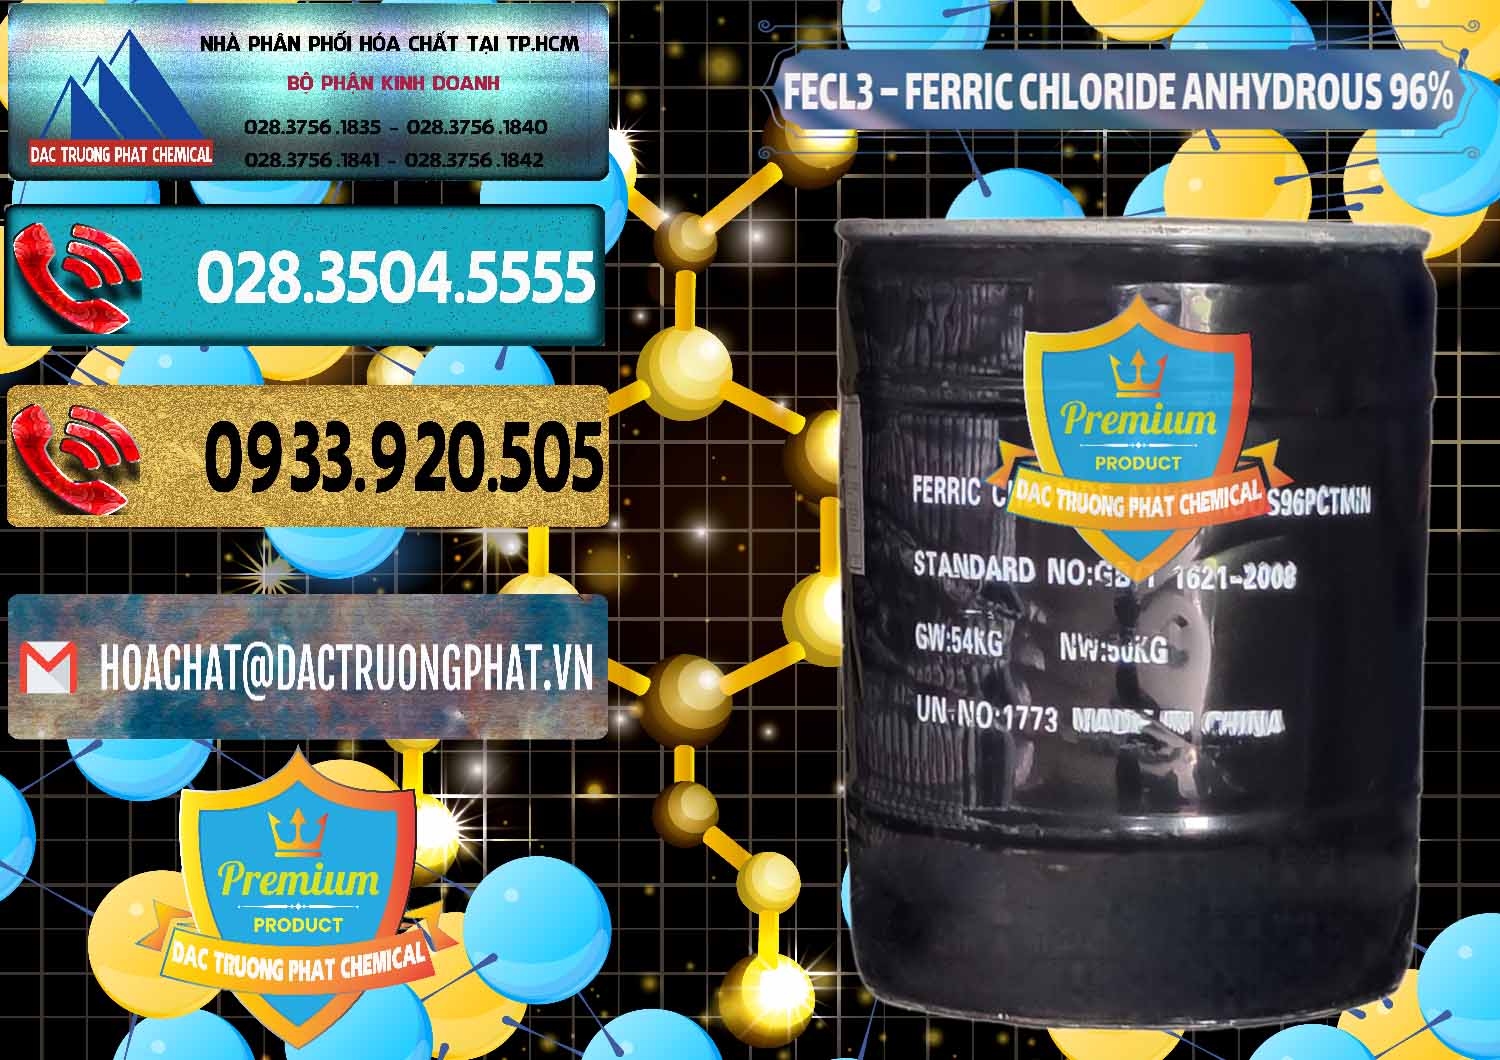 Bán ( cung cấp ) FECL3 – Ferric Chloride Anhydrous 96% Trung Quốc China - 0065 - Công ty chuyên bán và phân phối hóa chất tại TP.HCM - hoachatdetnhuom.com